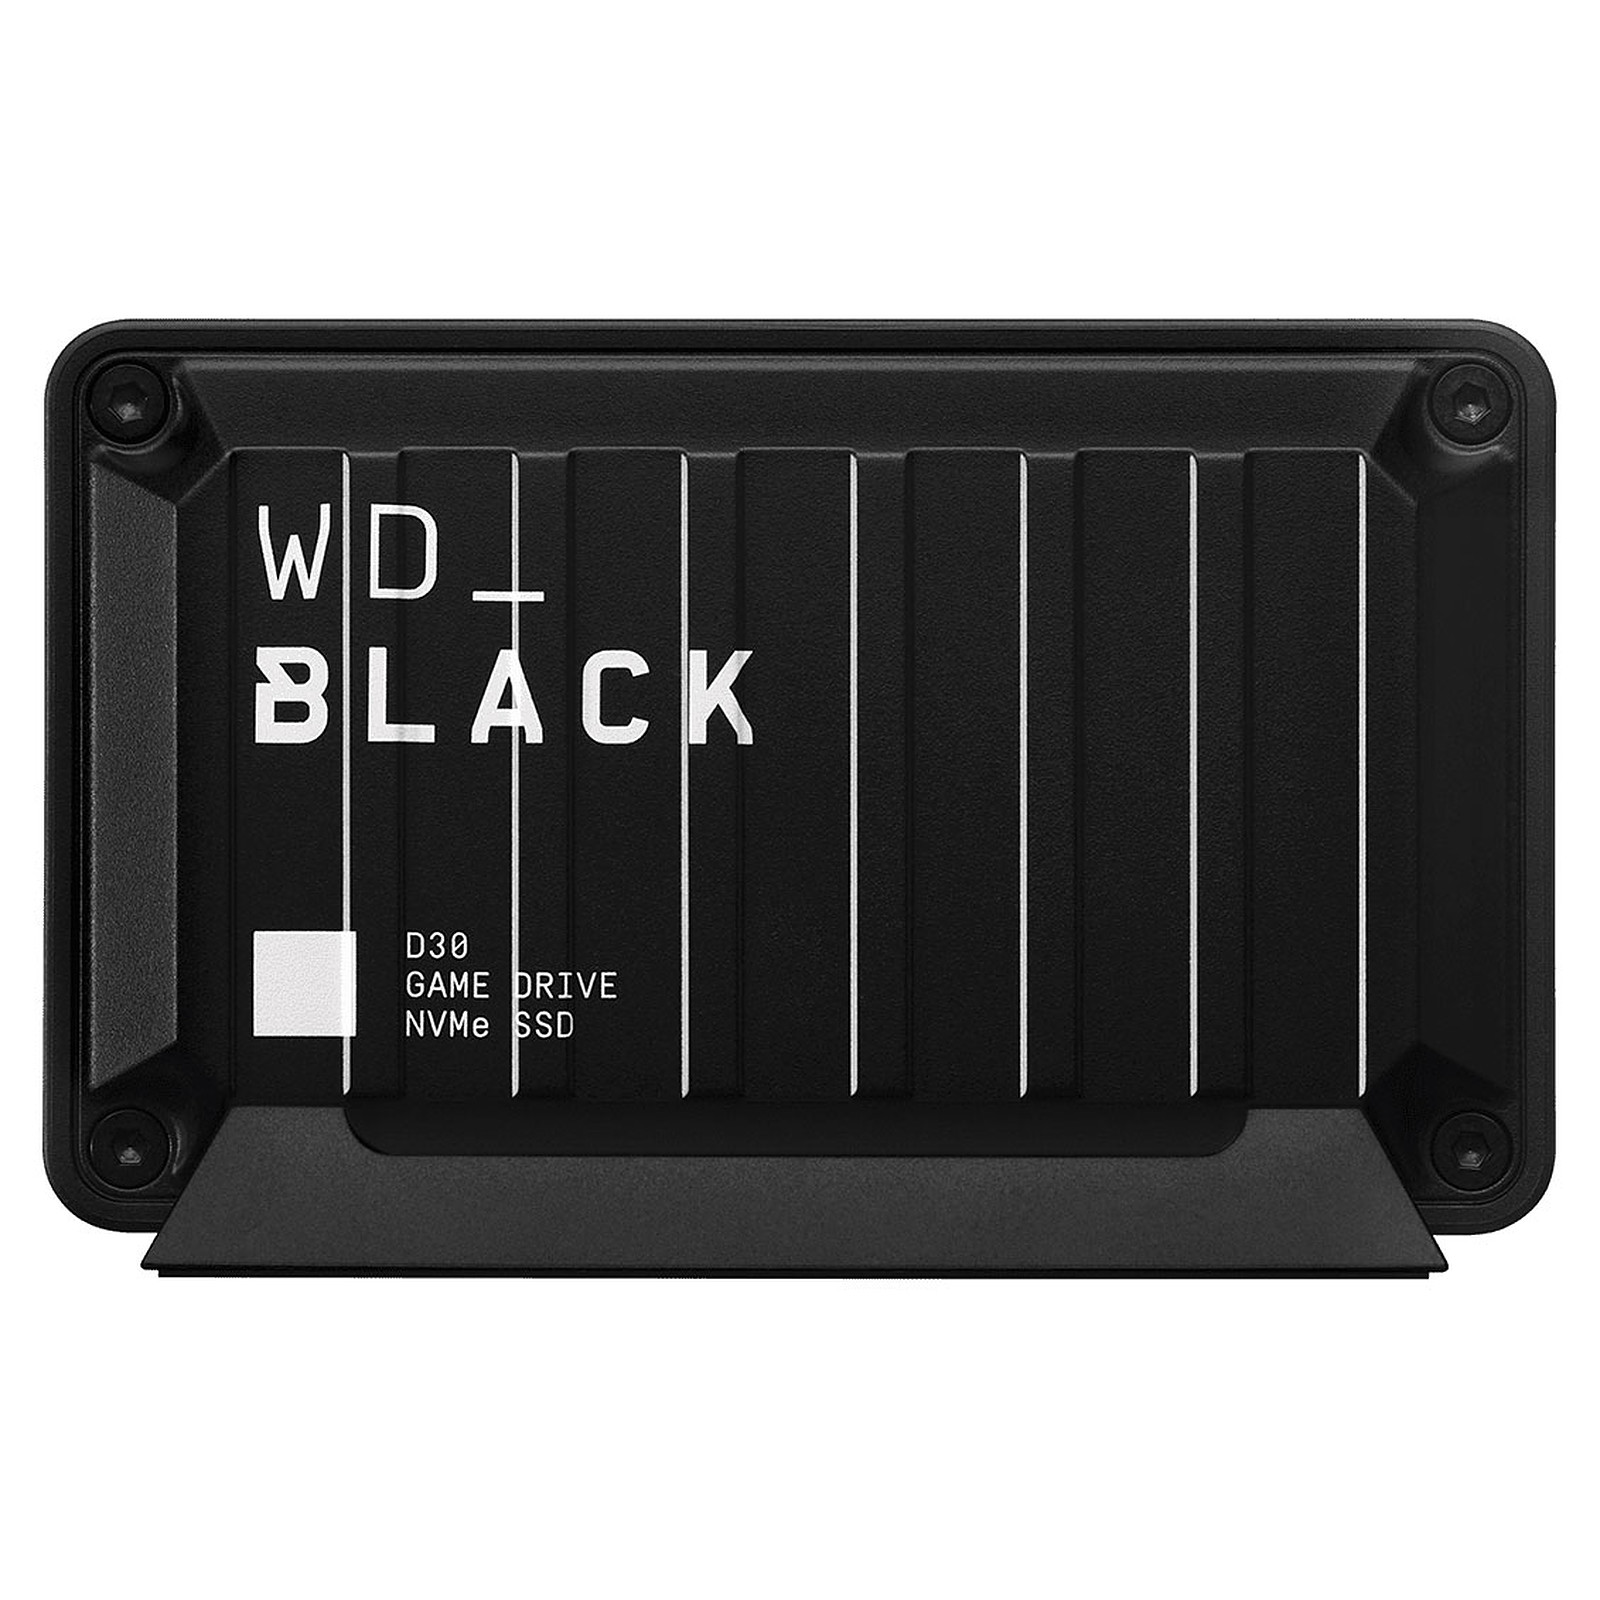 WD_Black D30 Game Drive SSD 500 Go - Disque dur externe WD_Black